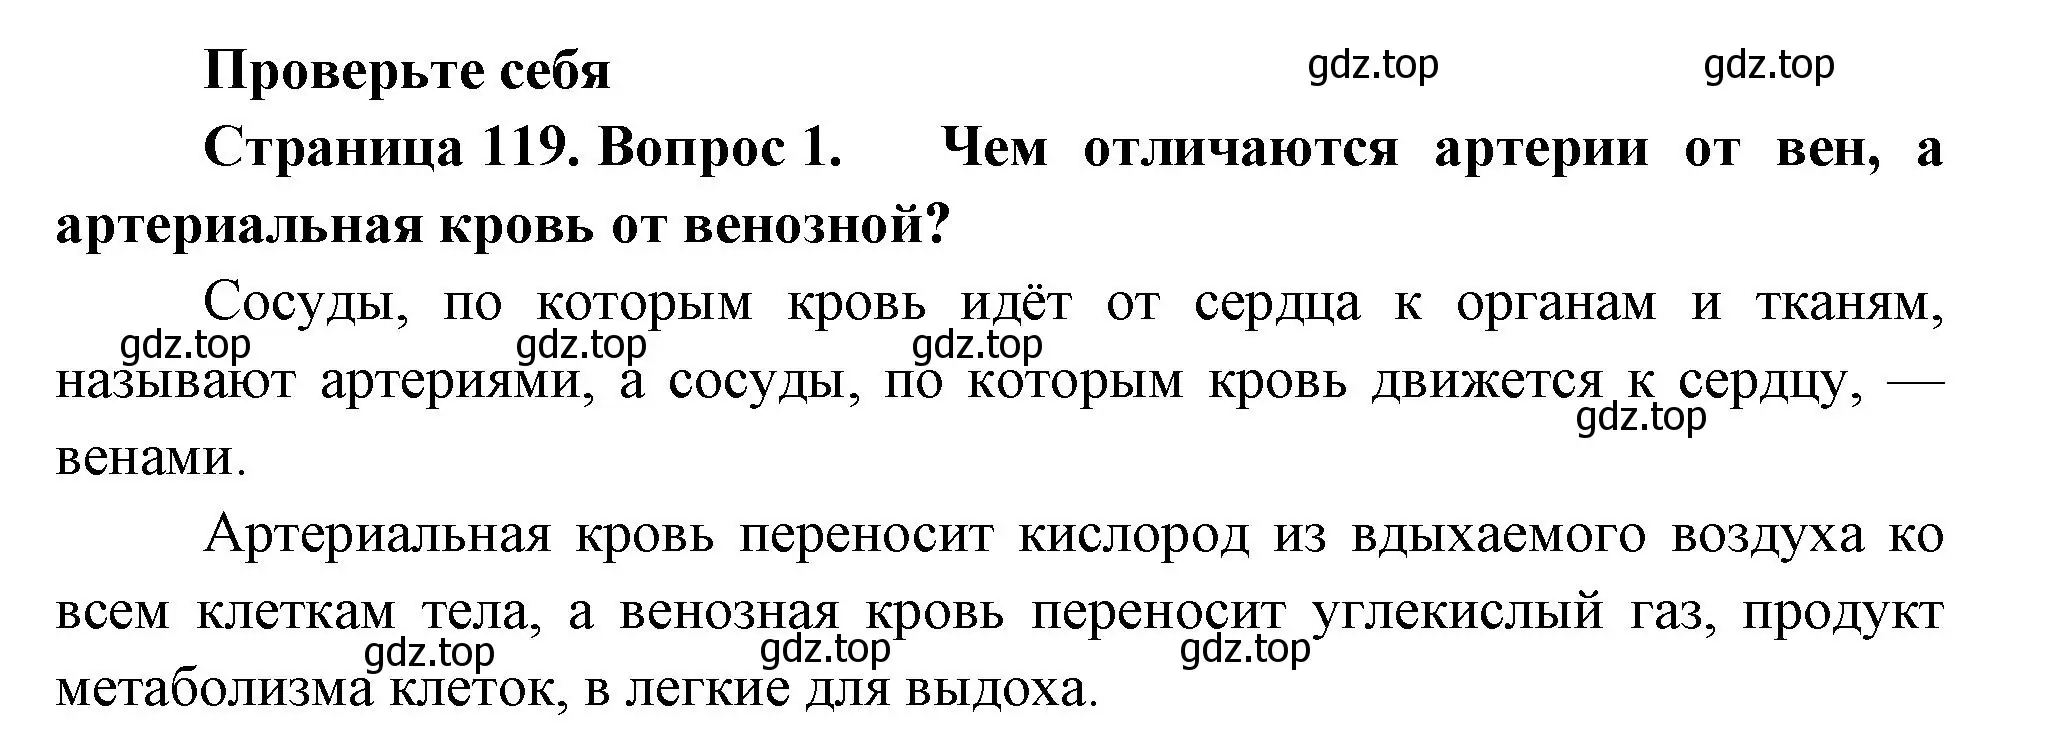 Решение номер 1 (страница 119) гдз по биологии 9 класс Пасечник, Каменский, учебник